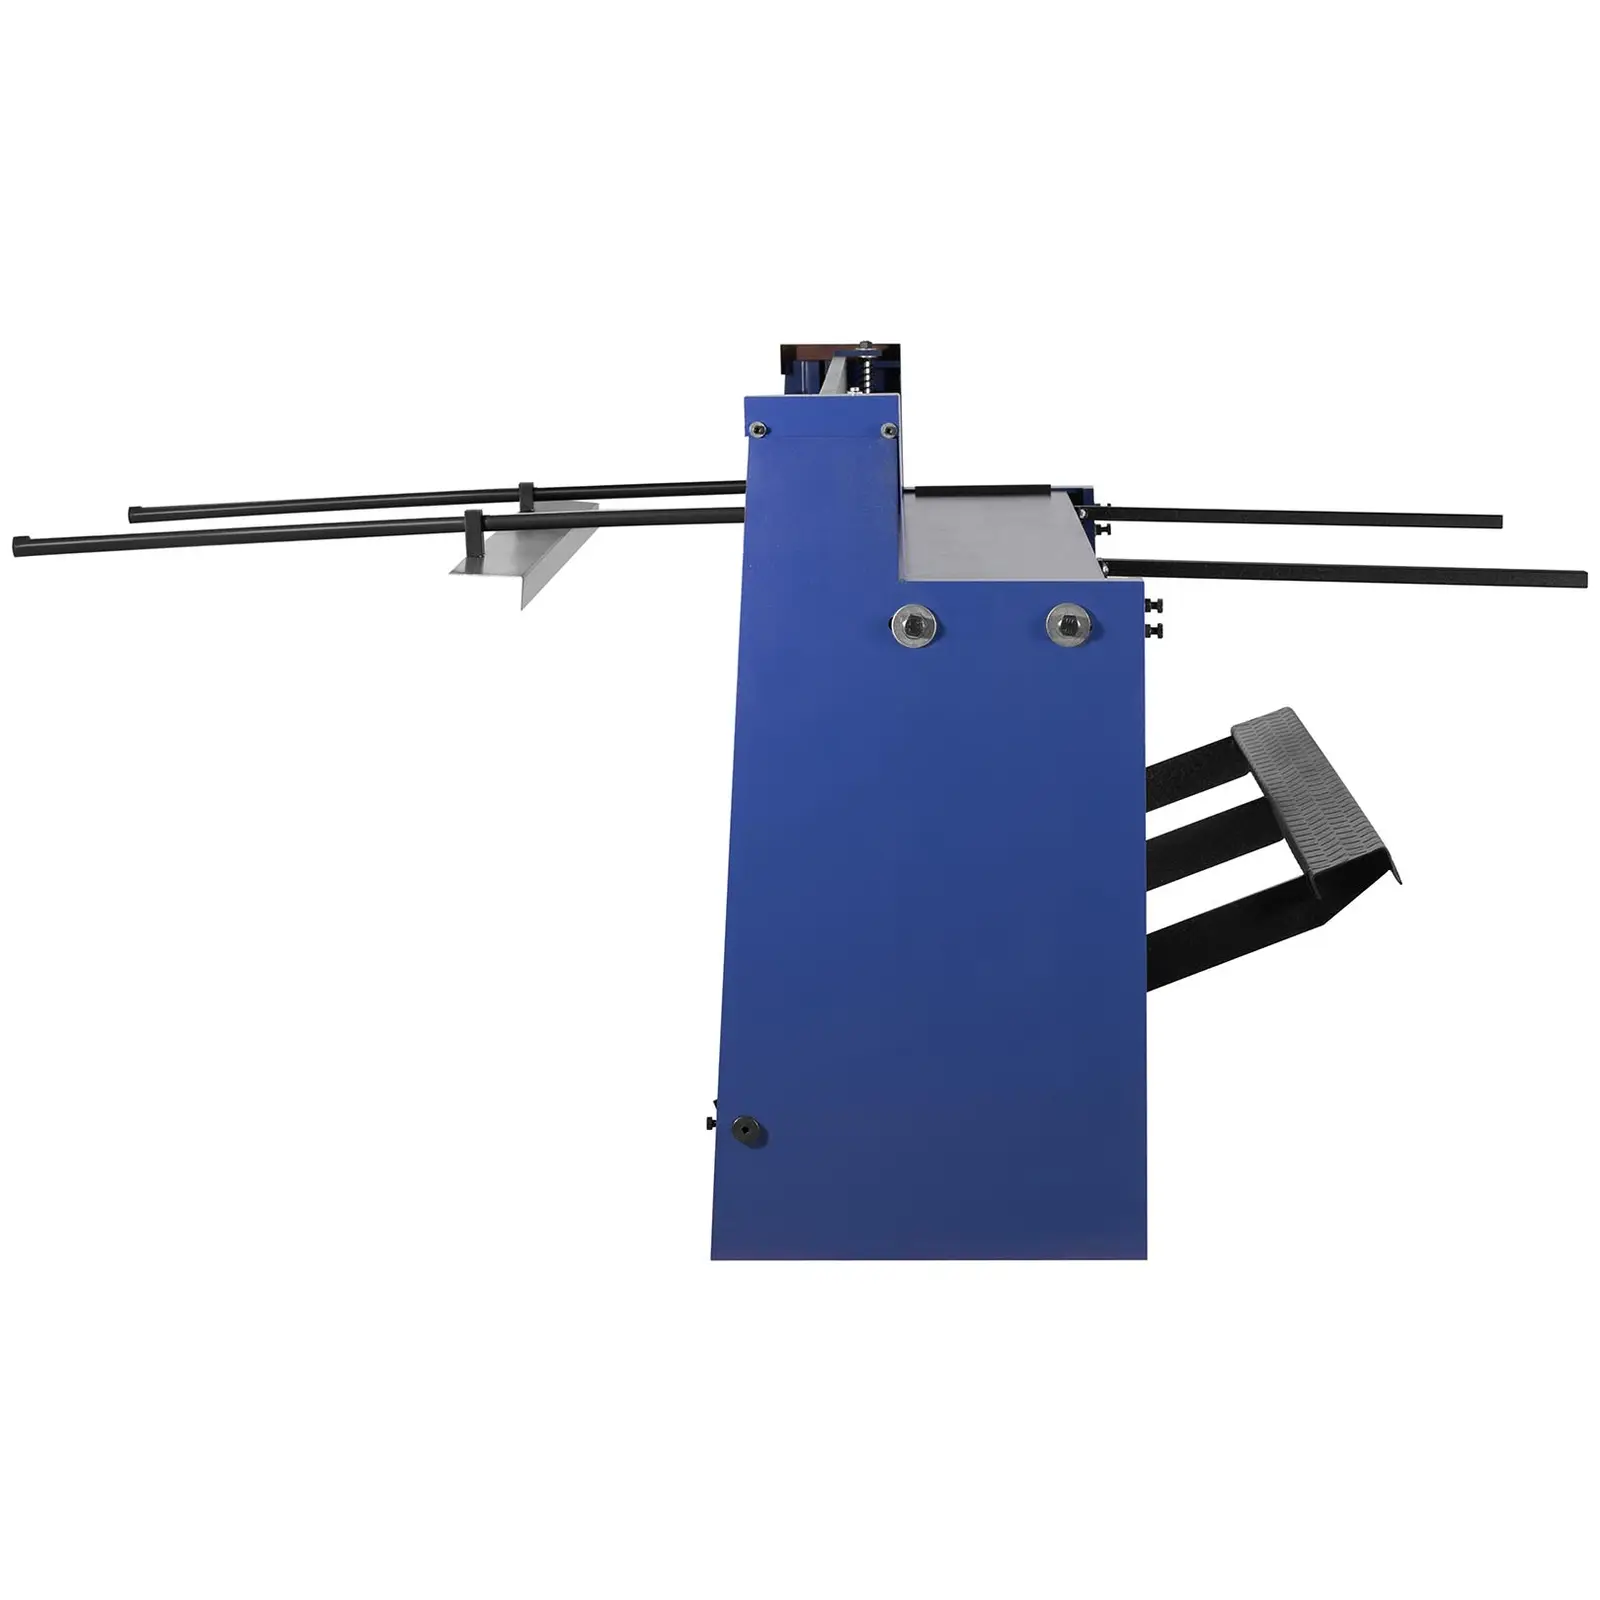 Tafelschere - mit Unterbau - Fußpedal - 1500 mm Schnittlänge - bis 1,2 mm Materialstärke - 0 - 840 m Hinteranschlag